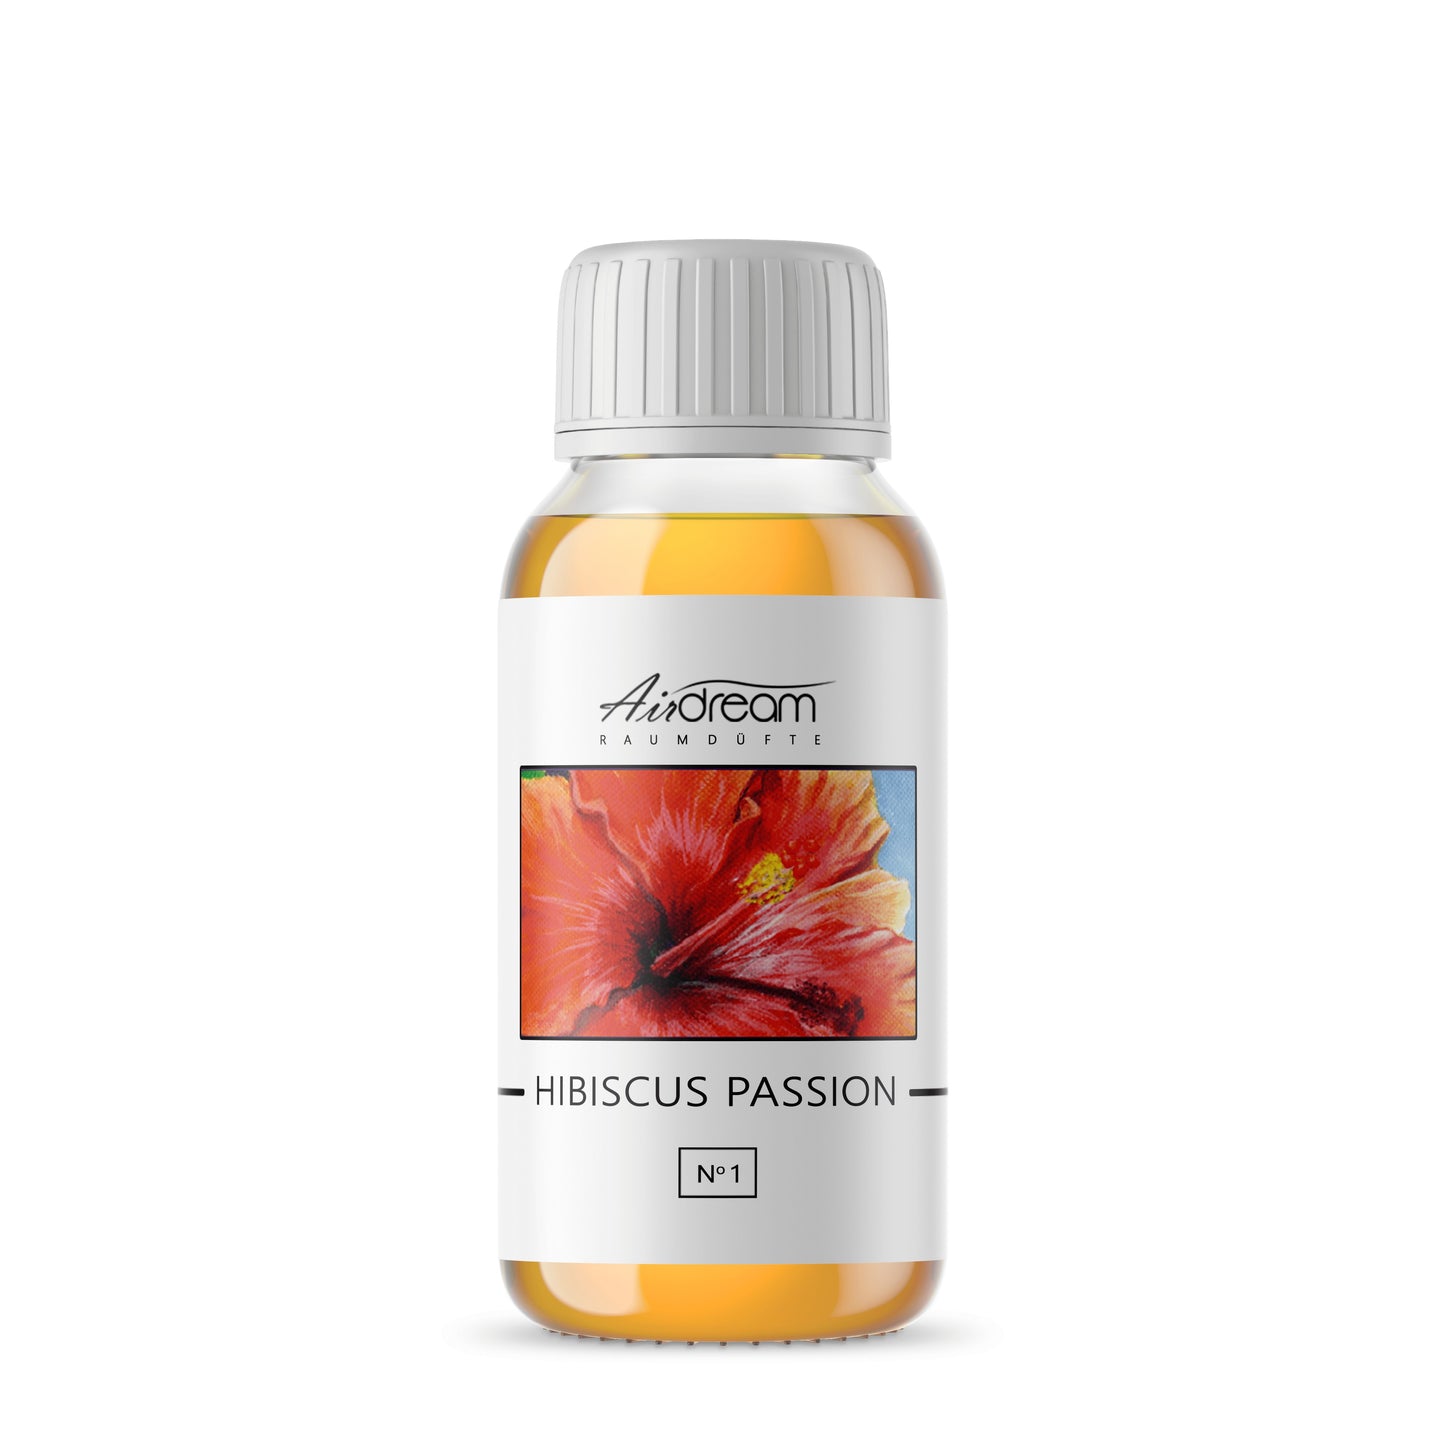 Hibiscus Passion